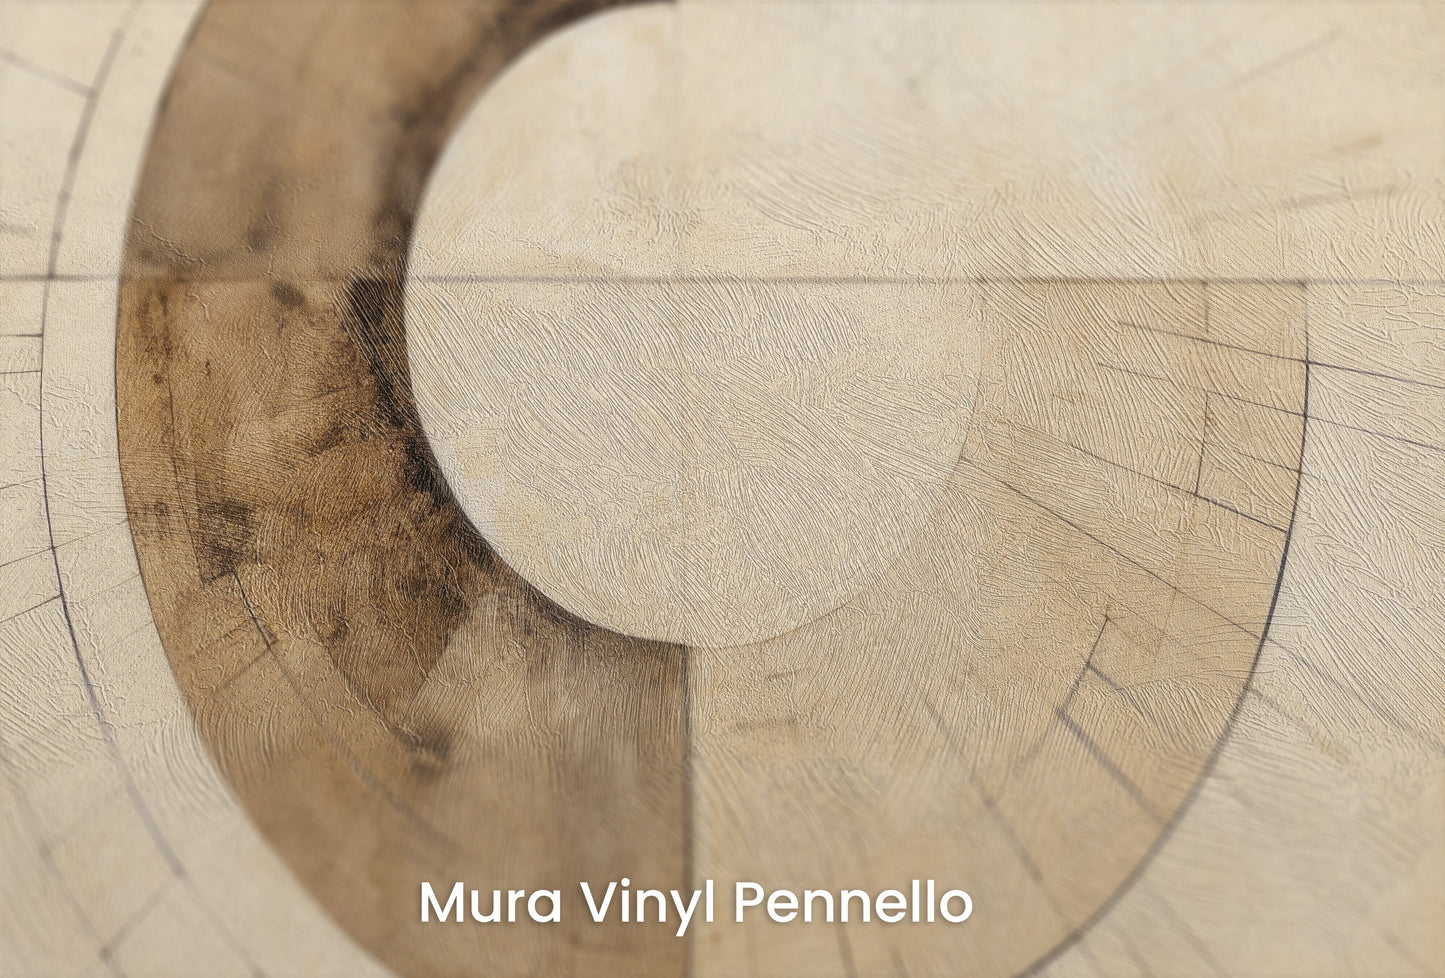 Zbliżenie na artystyczną fototapetę o nazwie SEPIA GEOMETRIC AURORA na podłożu Mura Vinyl Pennello - faktura pociągnięć pędzla malarskiego.